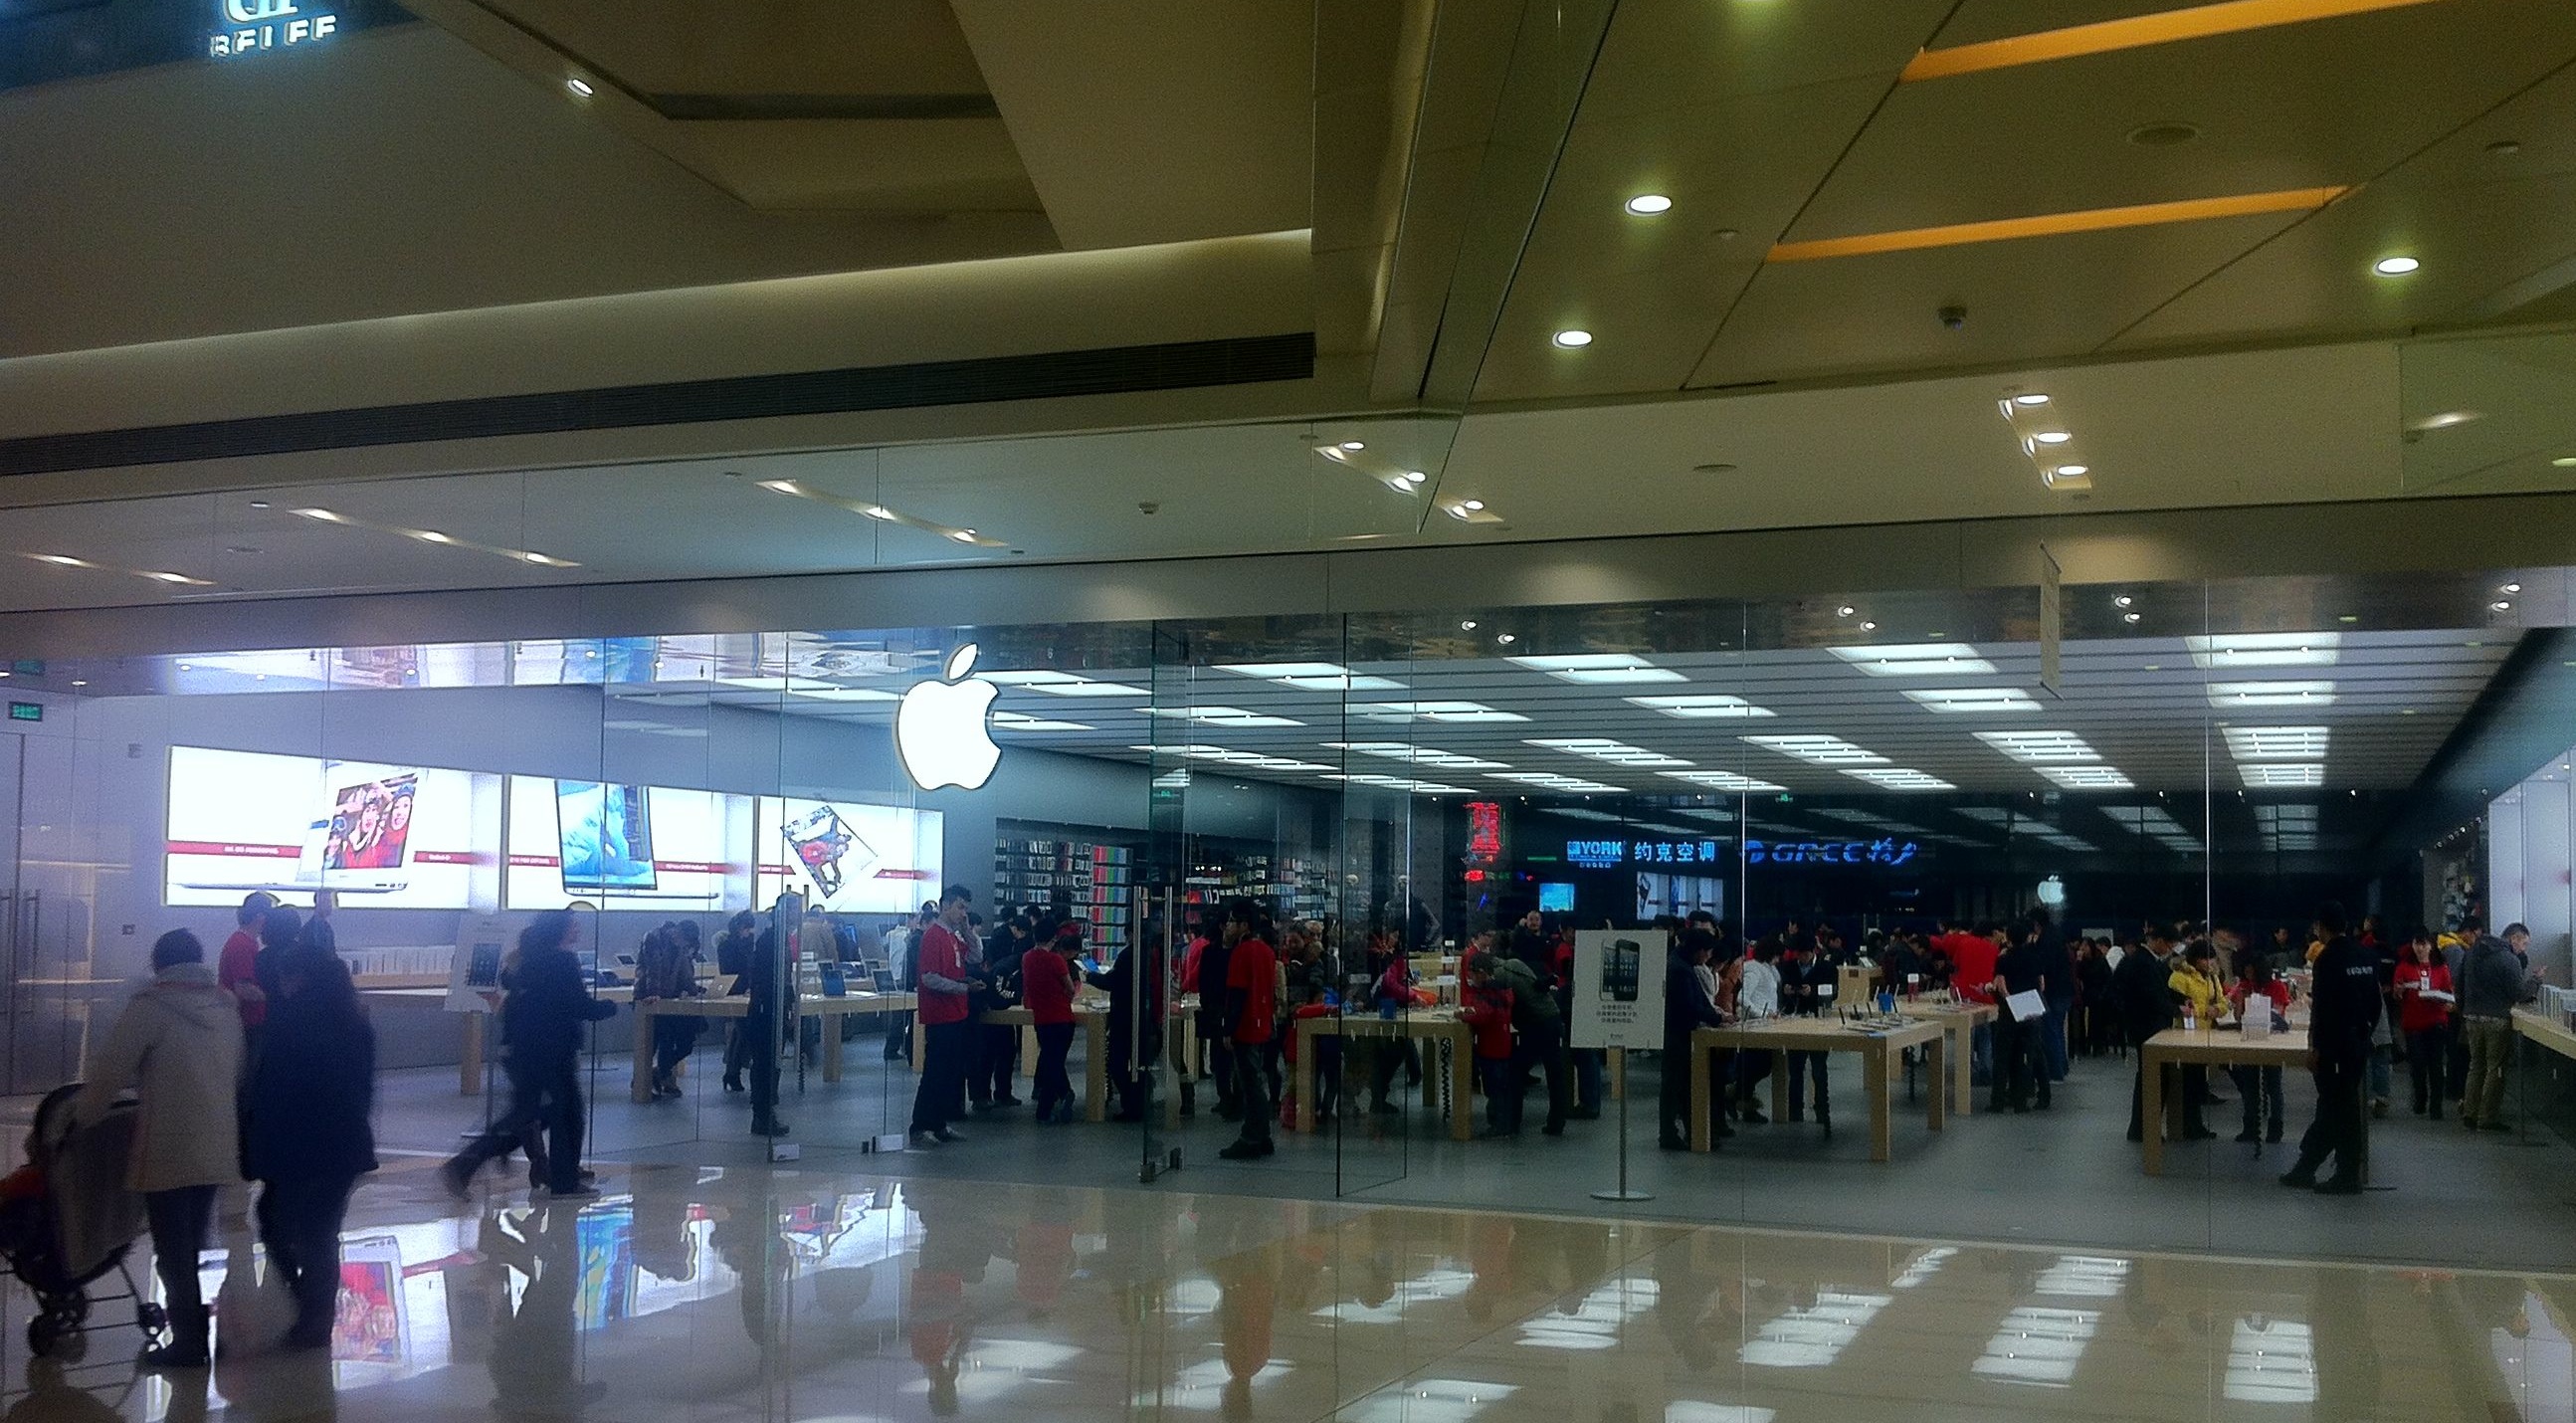 Apple Store Chengdu